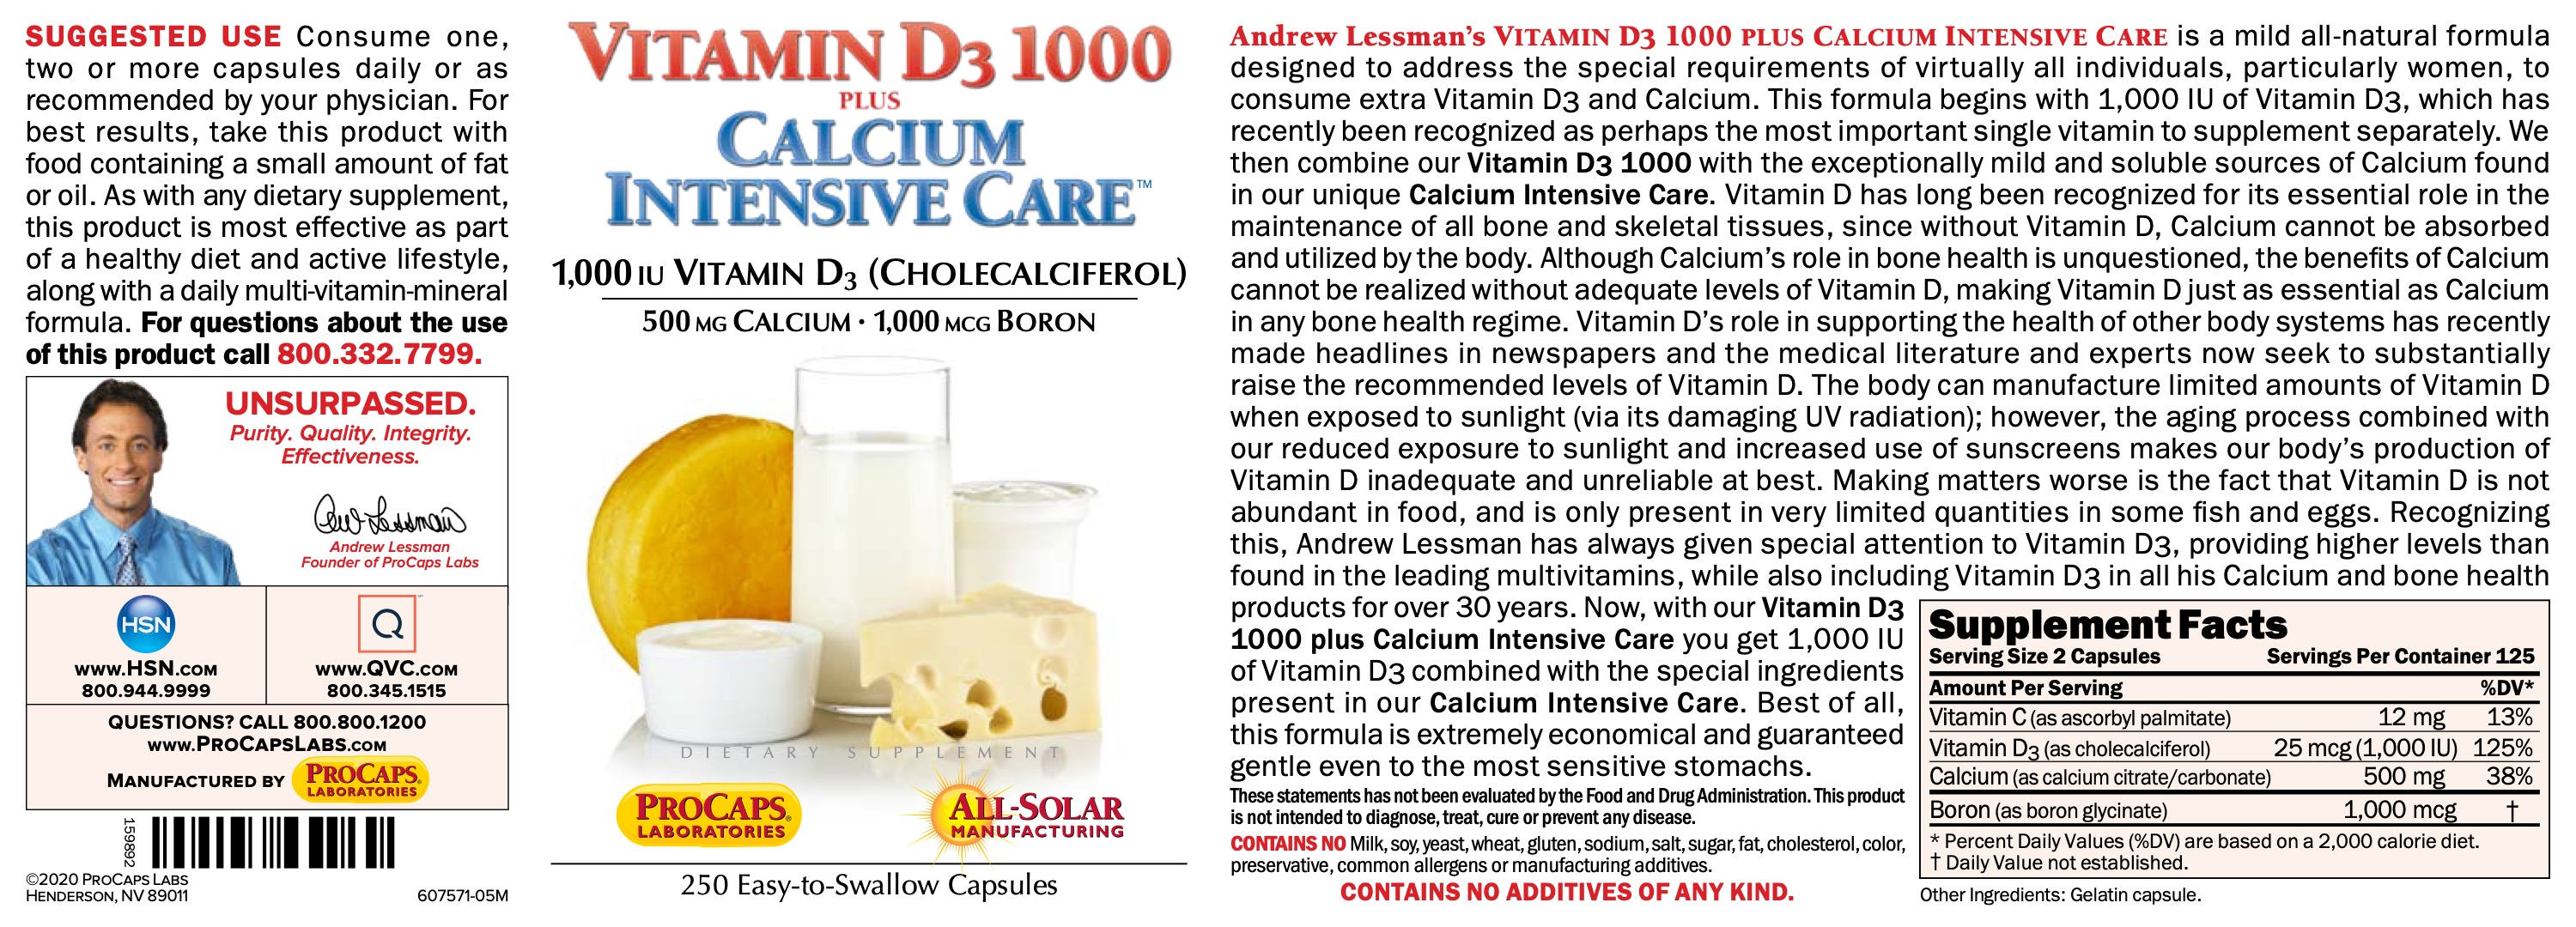 Vitamin-D3-1000-plus-Calcium-Intensive-Care-Capsules-Bone-Support